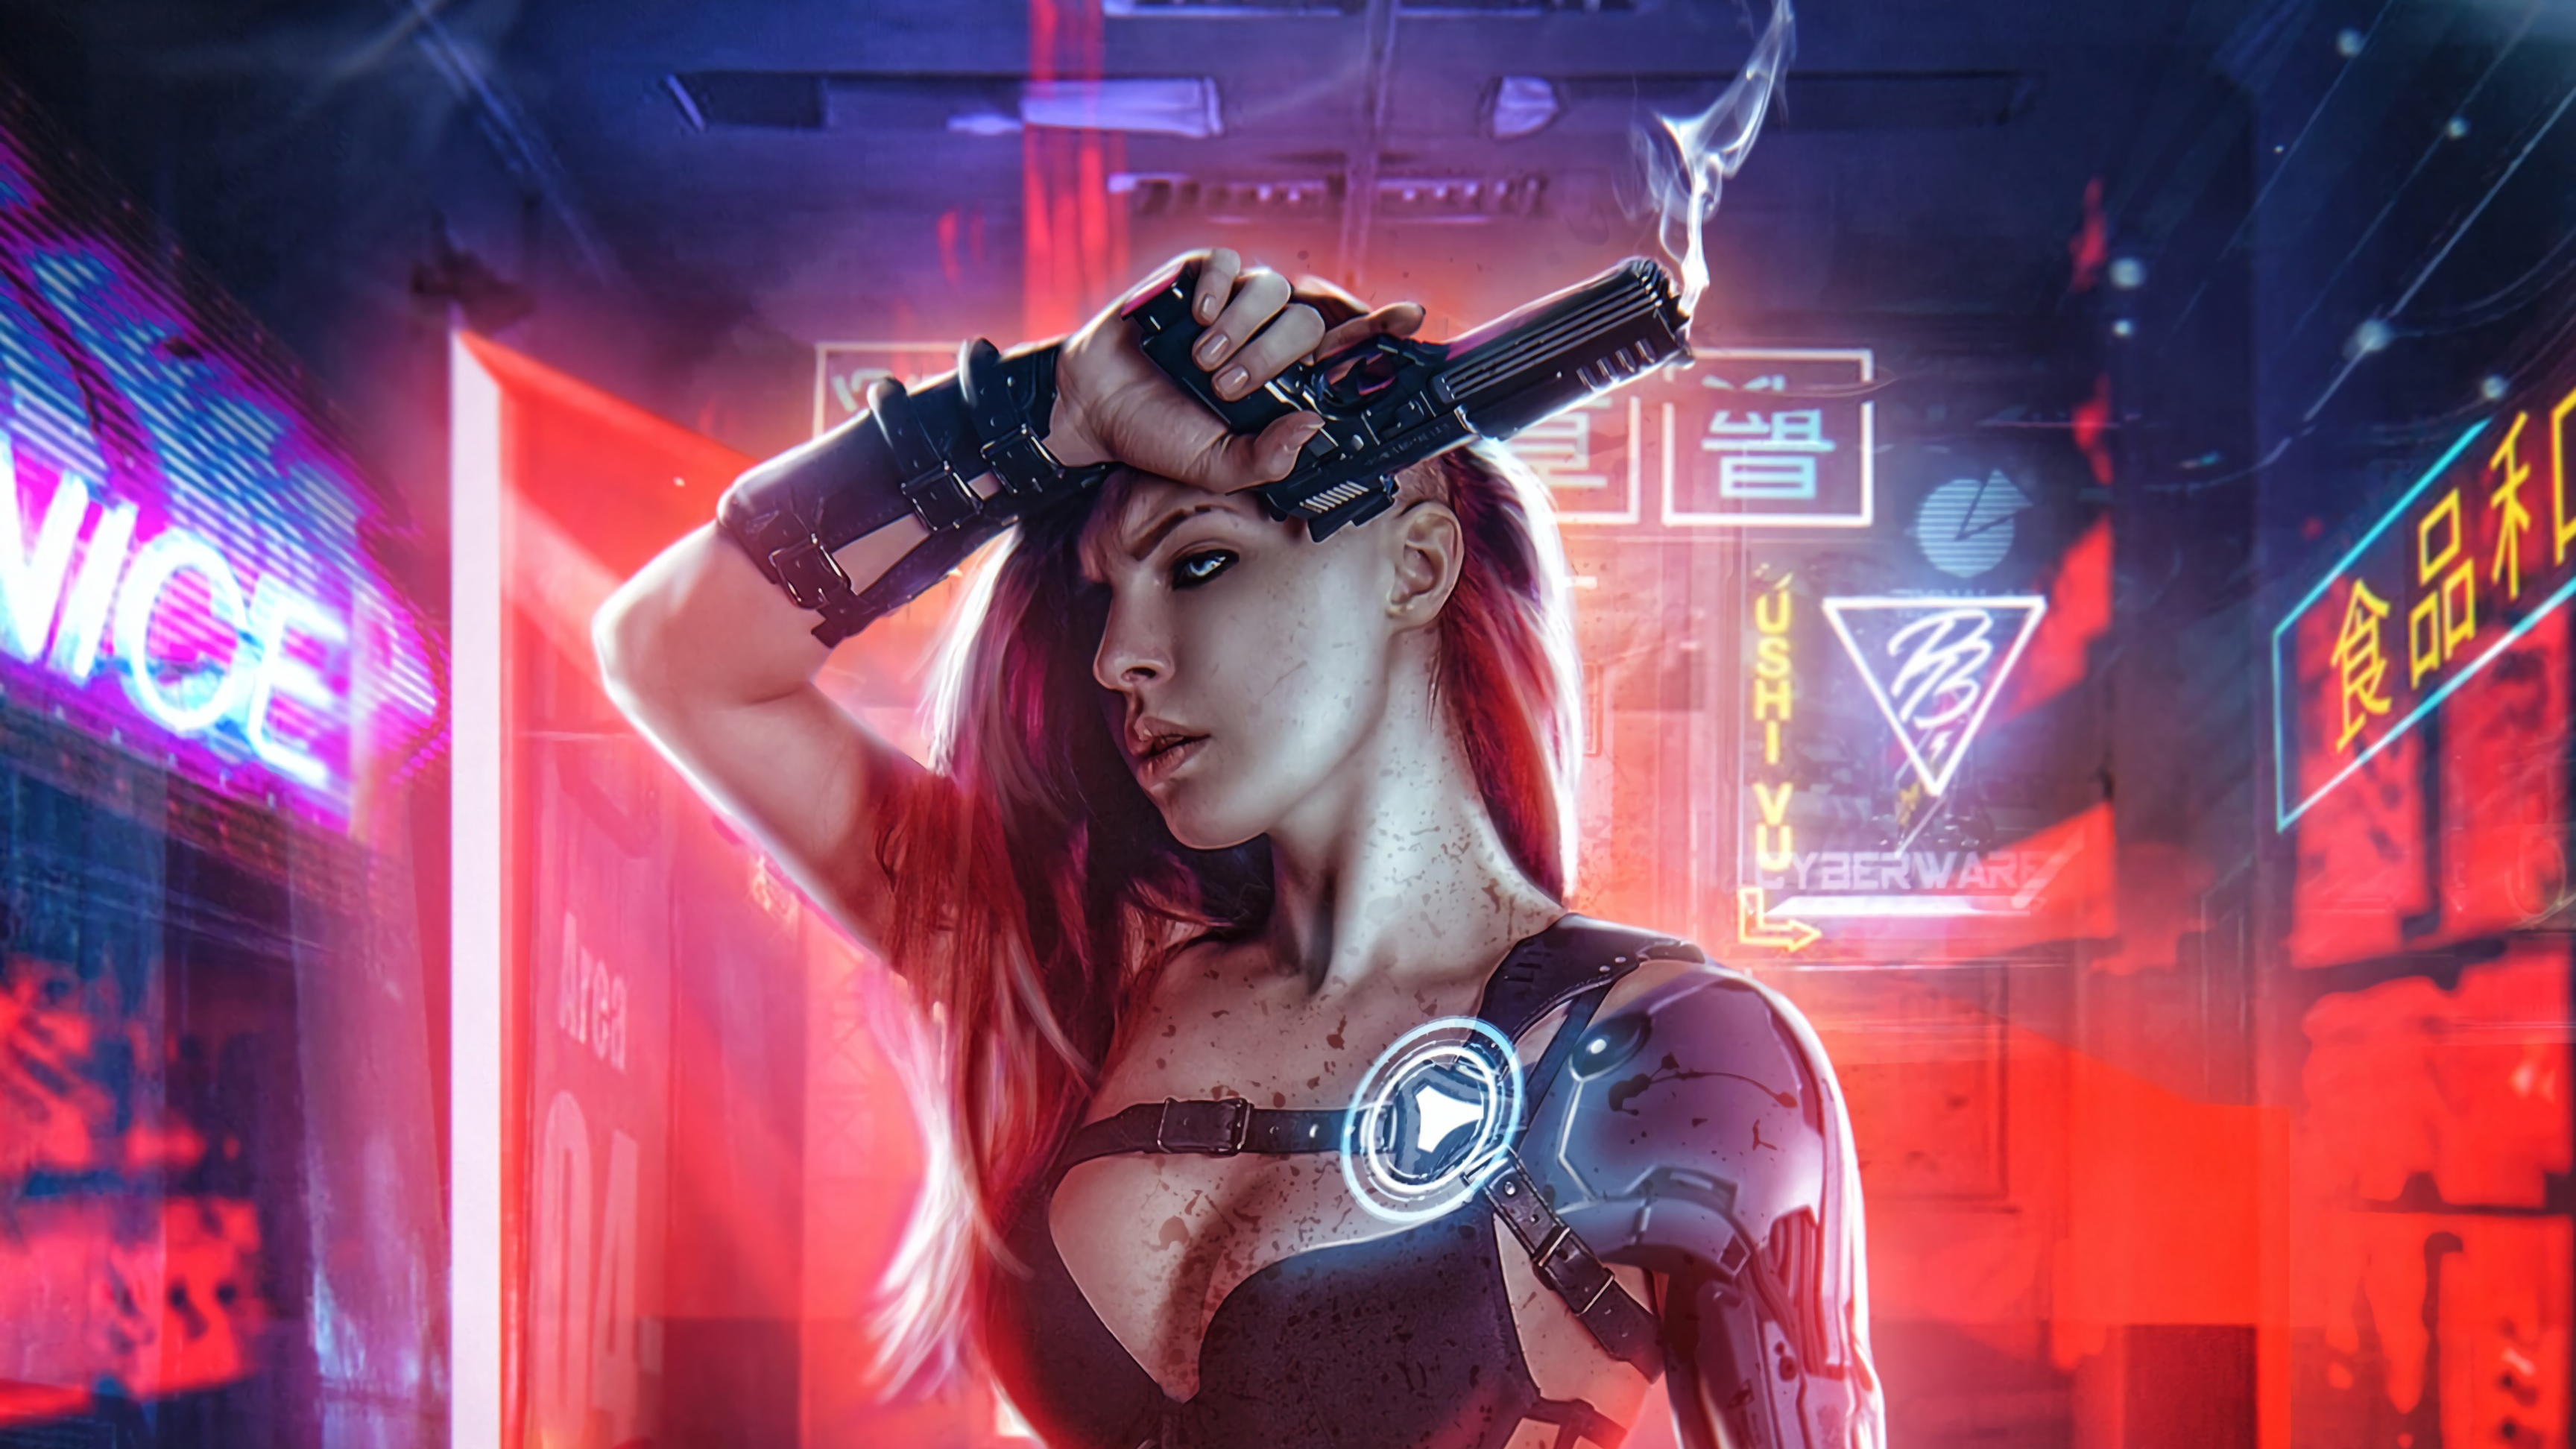 Cyberpunk Girl With Gun 4k Hd Artist 4k Wallpapers Images 0637